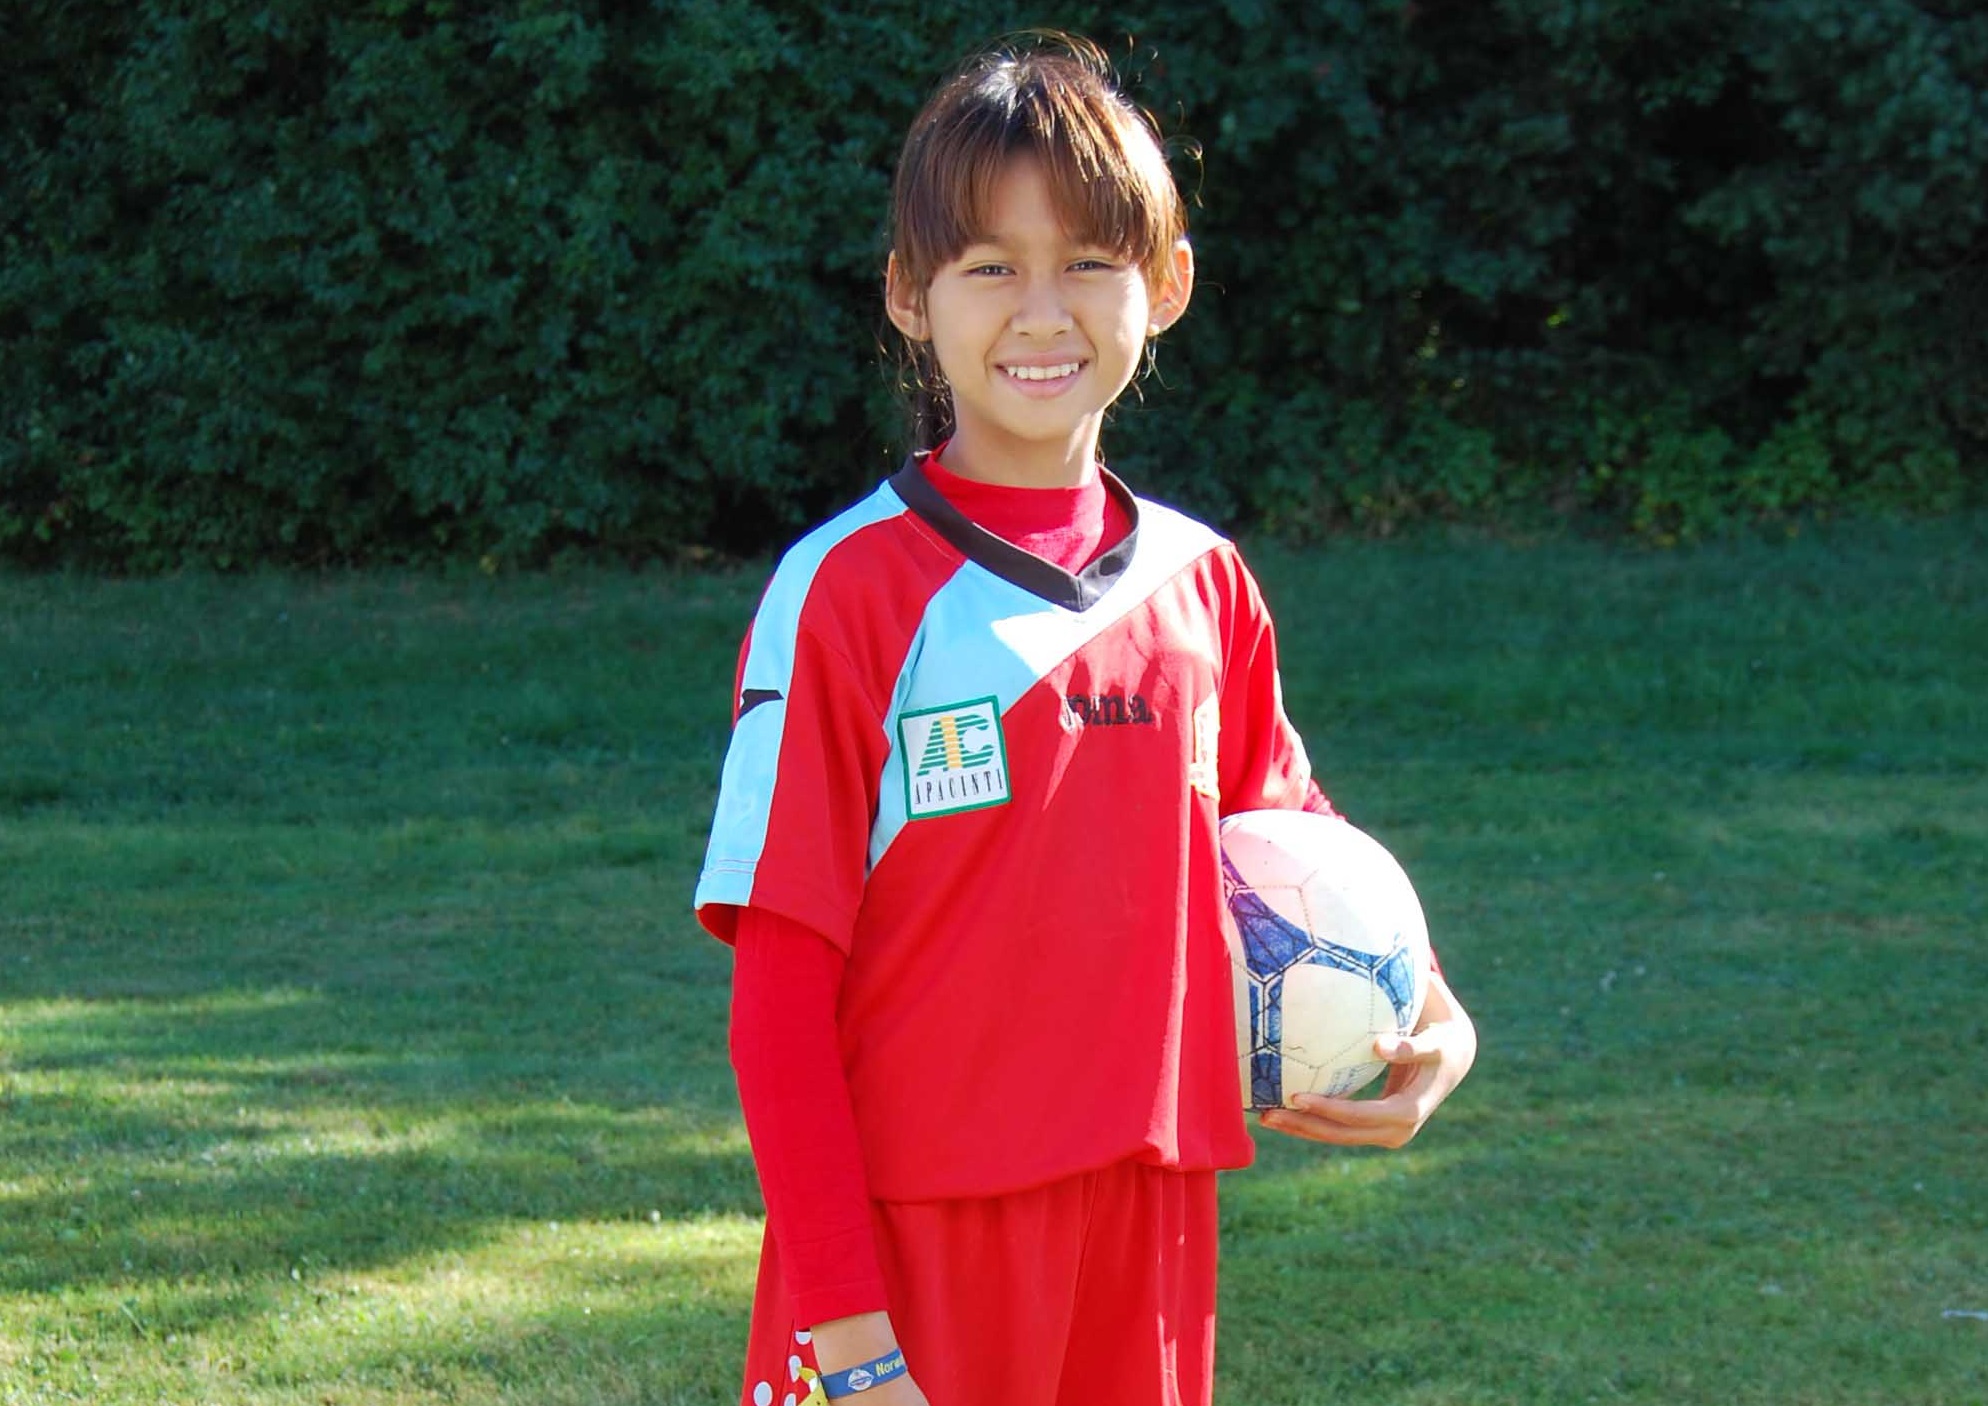 Awal Main Sepak Bola Malu-malu, Sekarang Zahra Muzdalifah Jadi Andalan Timnas Putri